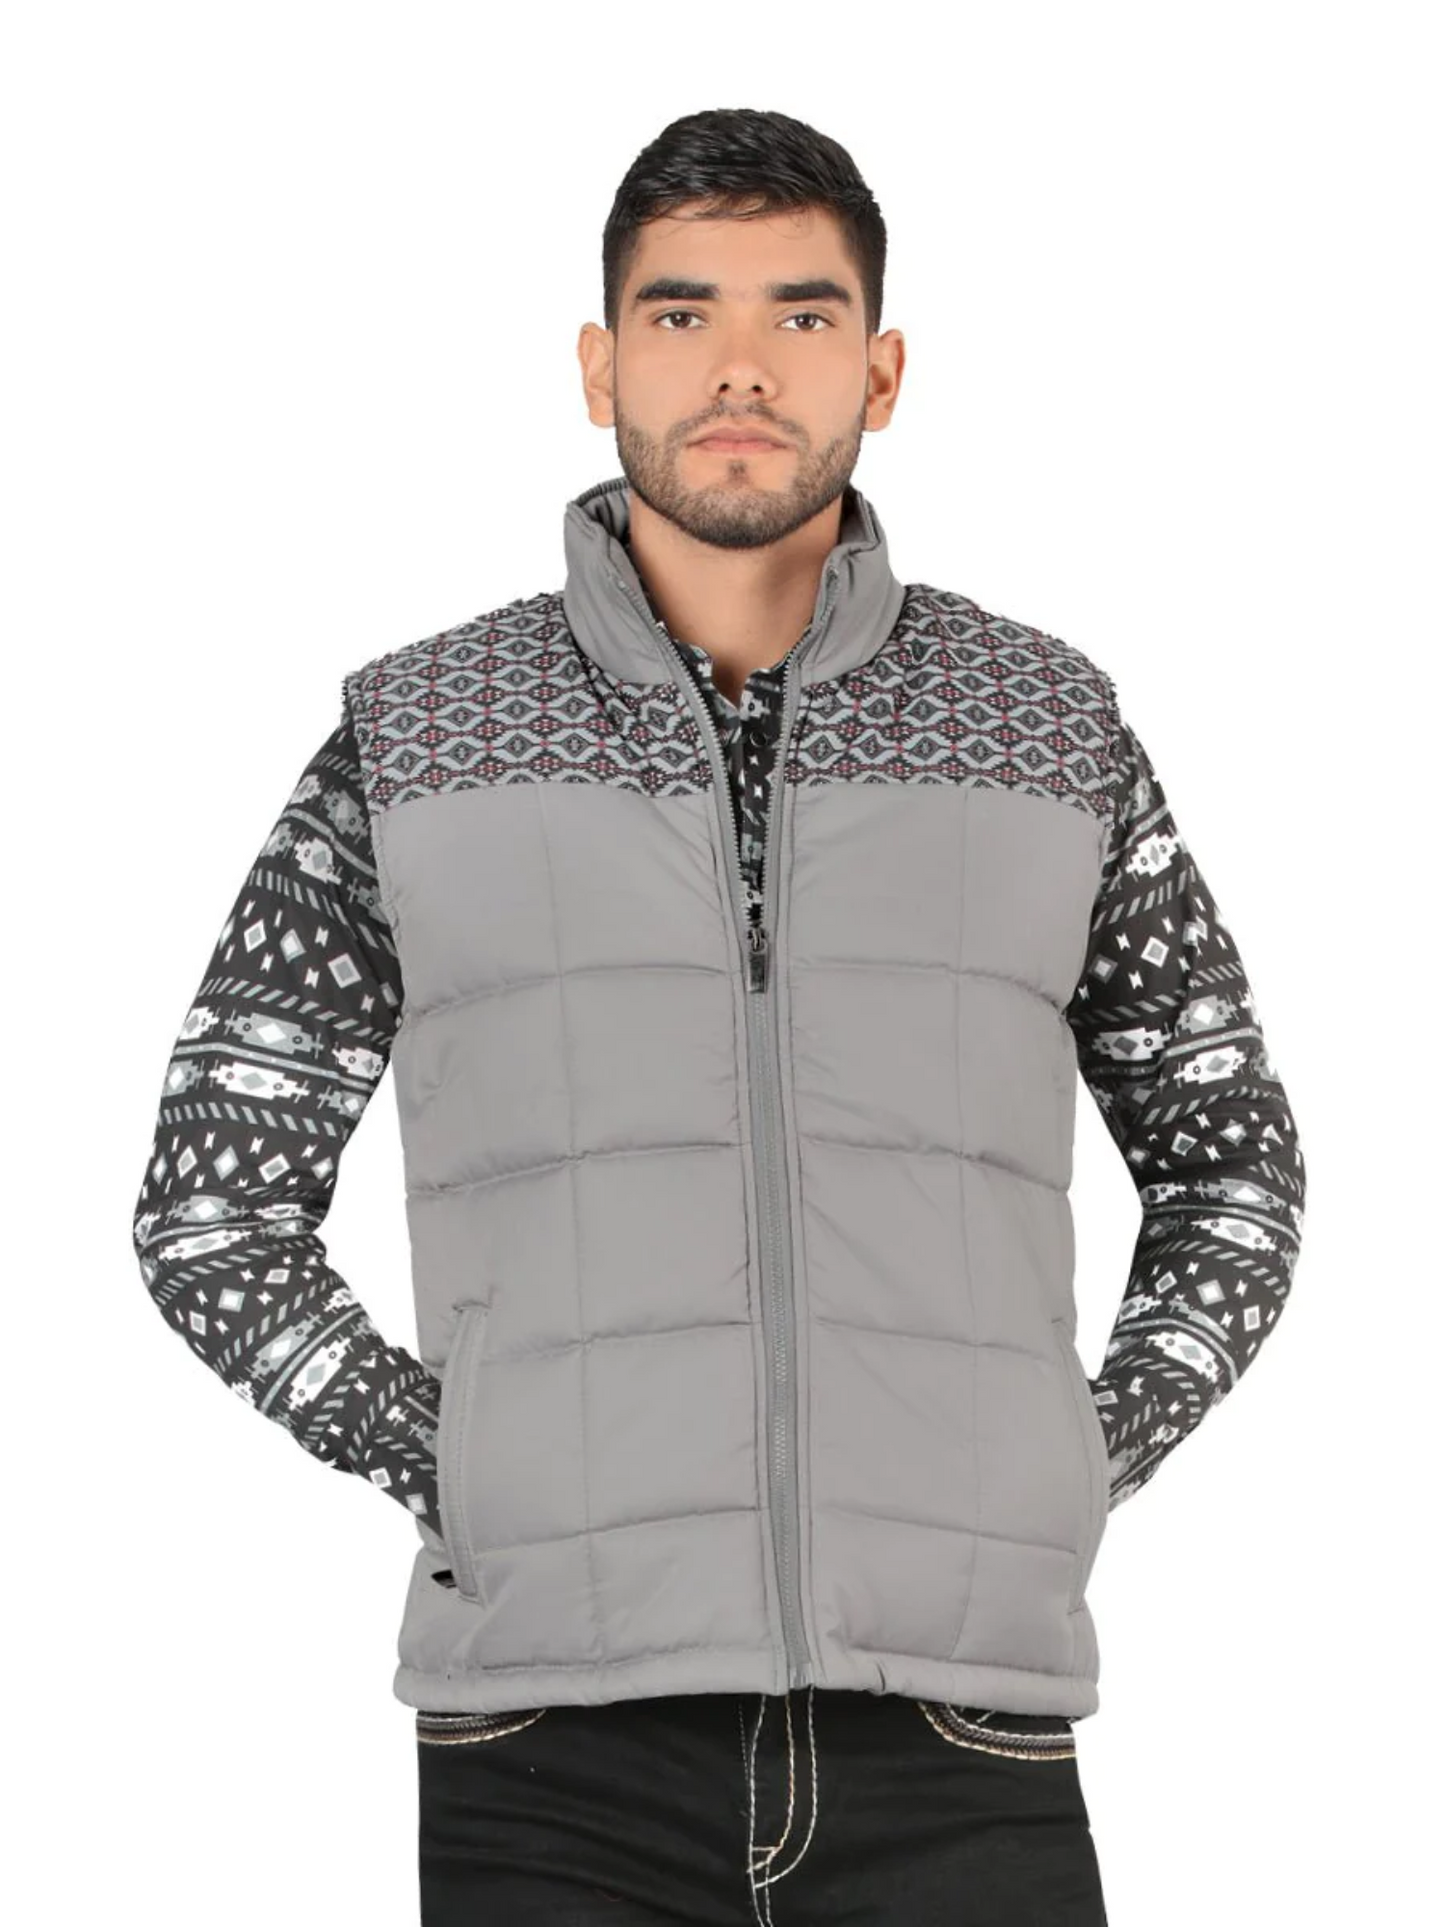 Ultralight Padded Denim Vest for Men 'Montero' - ID: 10005 Western Vest Montero Light Gray